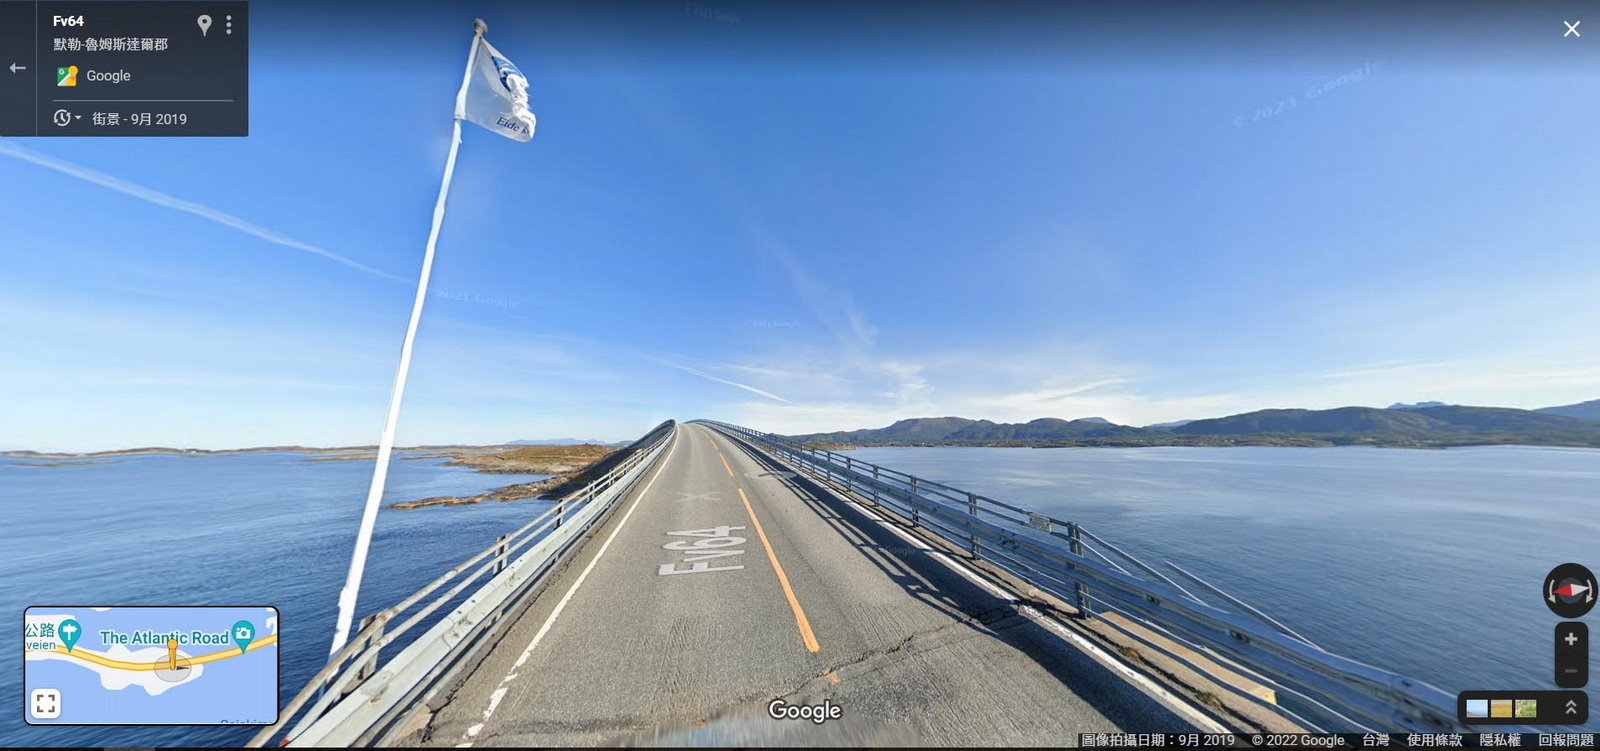 圖／「大西洋海濱公路」設計獨特加上得天獨厚的美景，每年都吸引許多觀光客朝聖，為挪威著名的觀光公路之一。